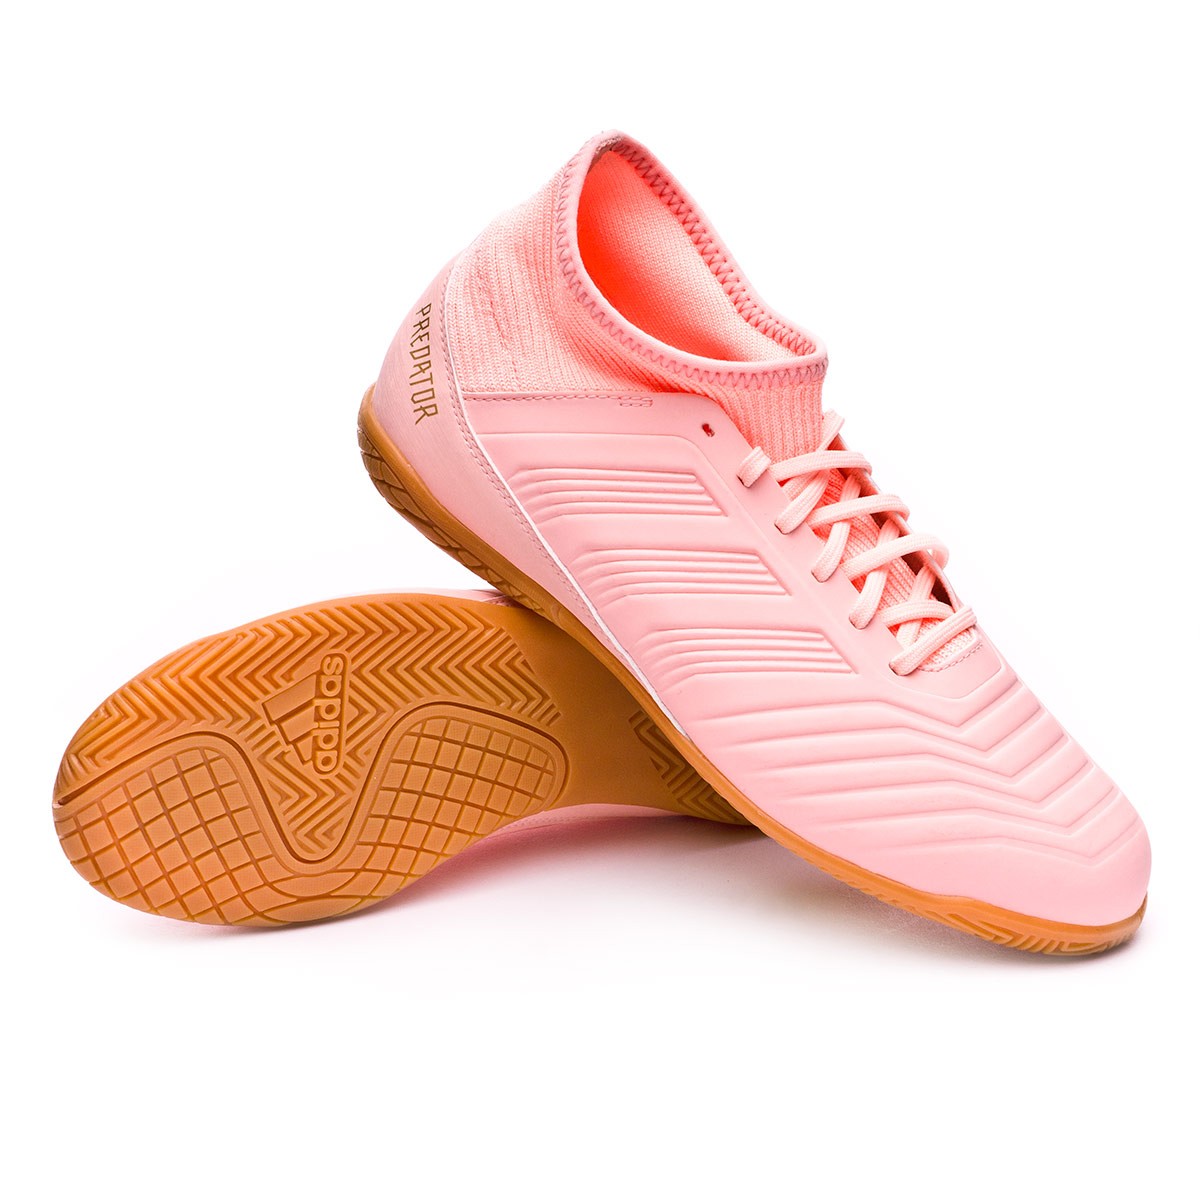 adidas predator tango 18.3 turf pink